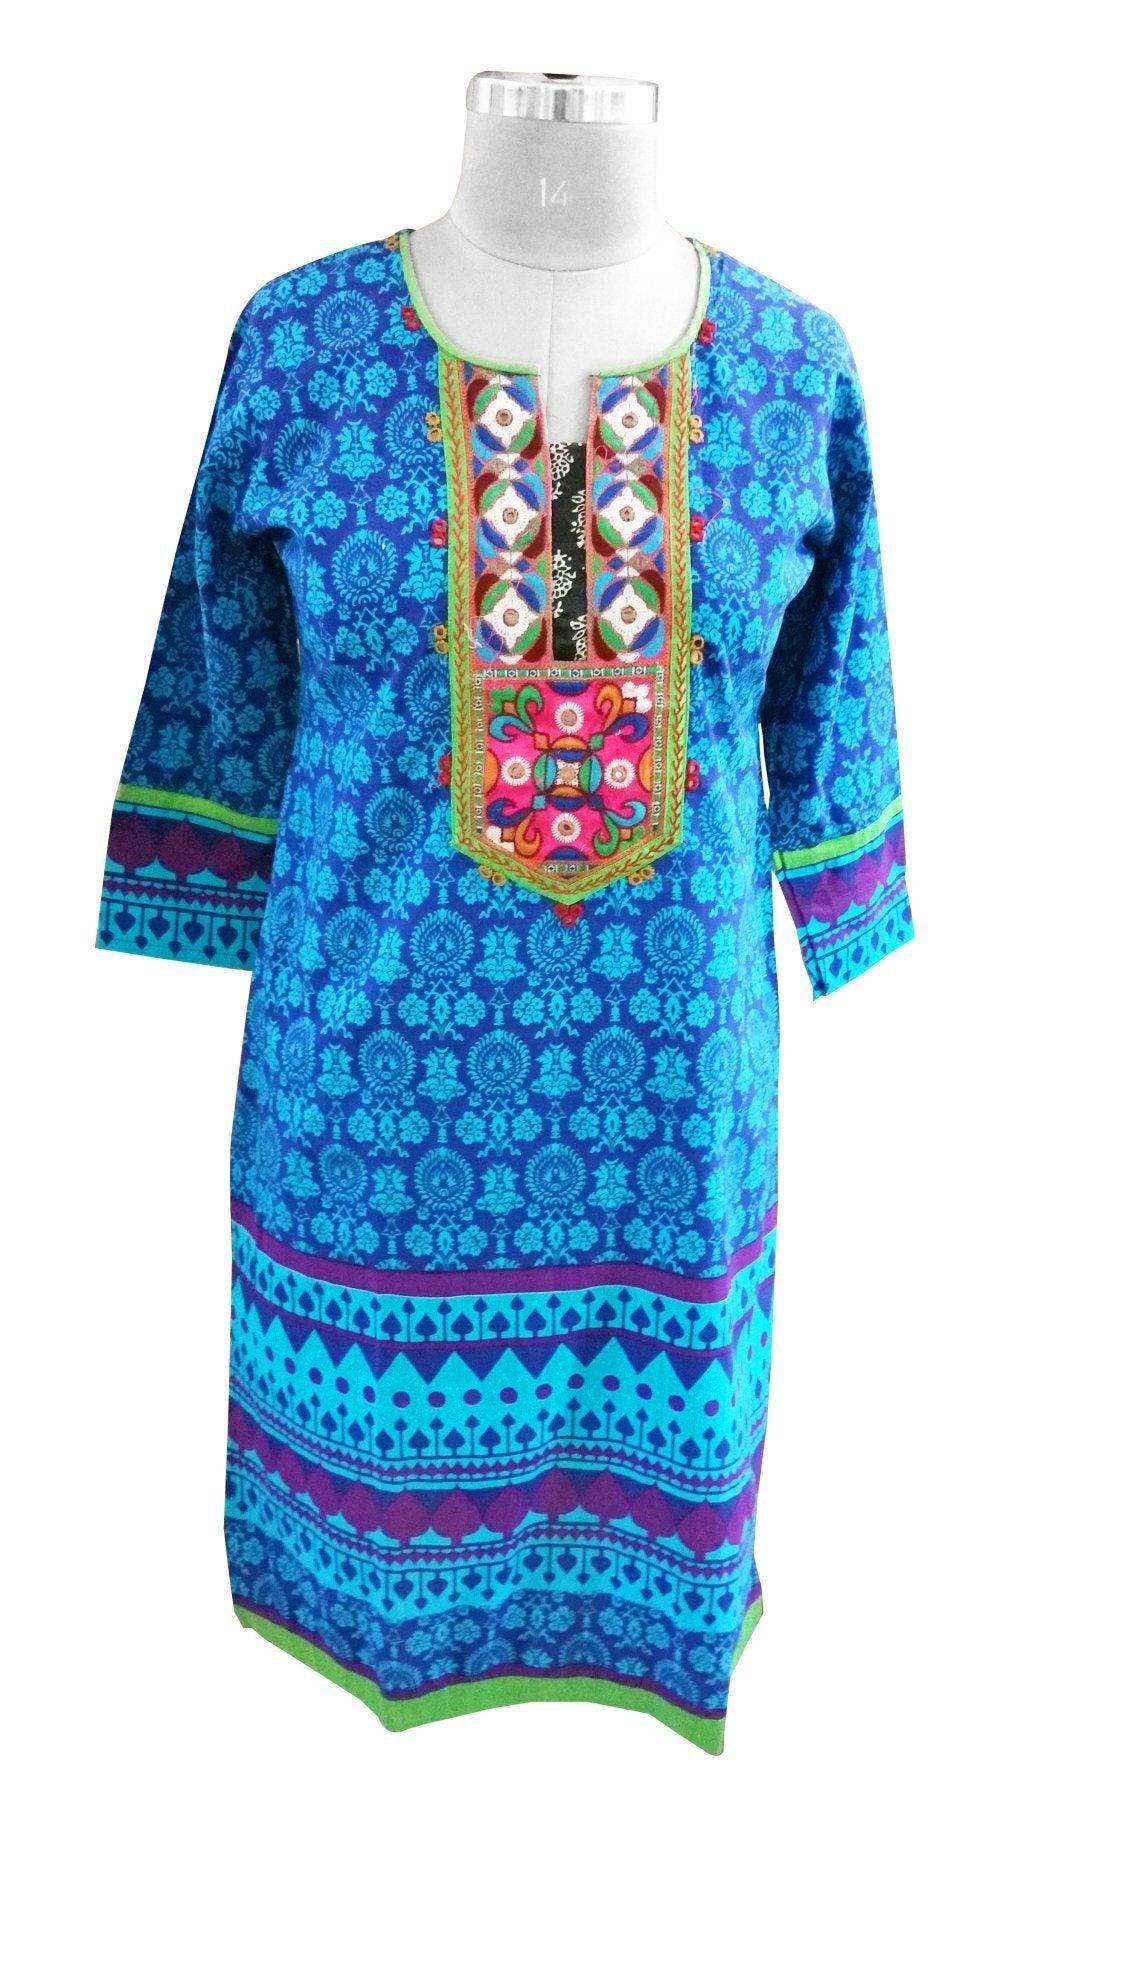 Blue Cotton Neck Work Long Stitched Kurta Dress Size 42 ACC39-Anvi Creations-Kurta,Kurti,Top,Tunic